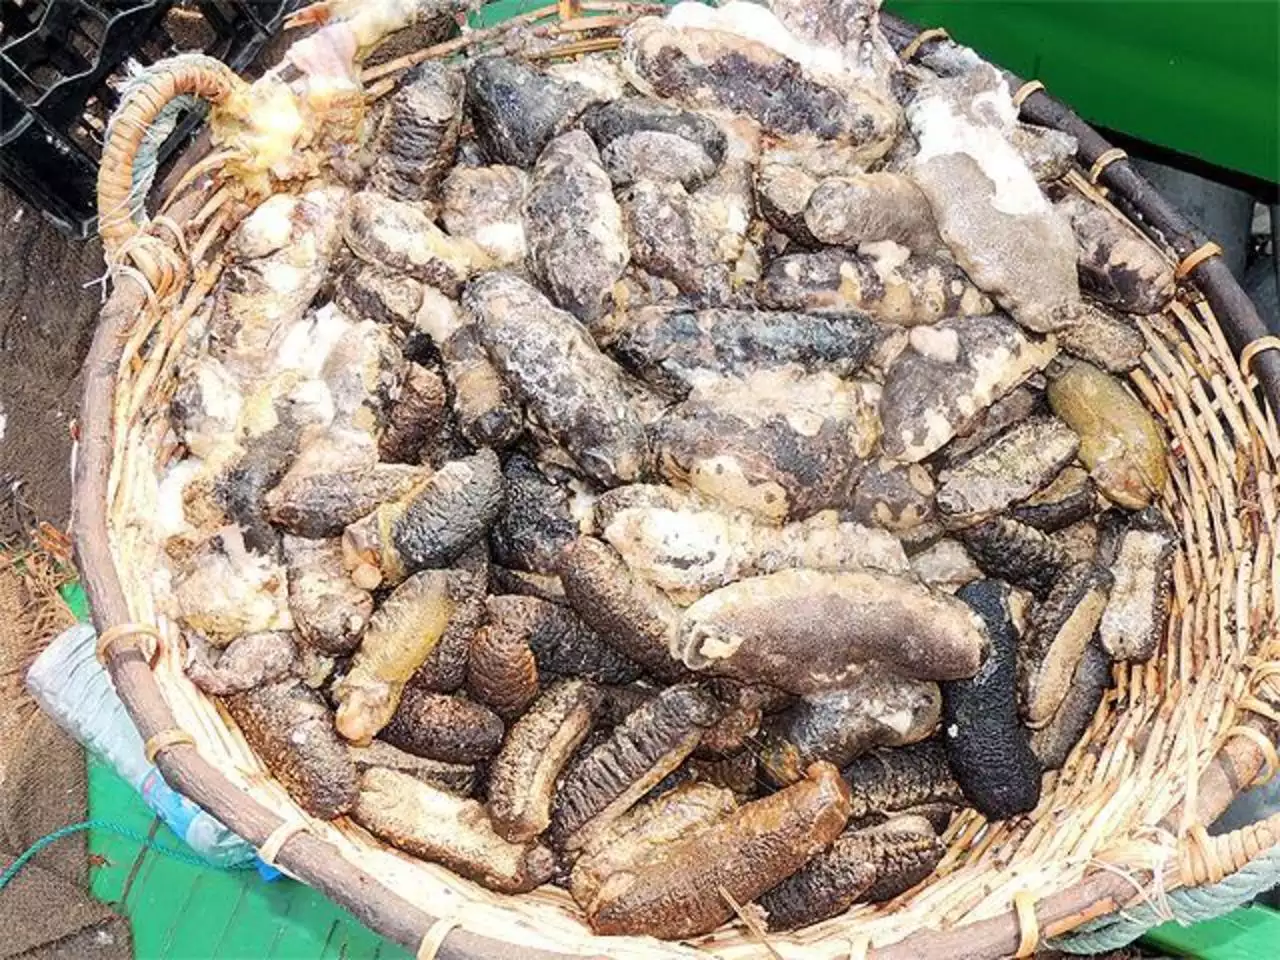 250 kg of sea cucumber seized in Tamil Nadu